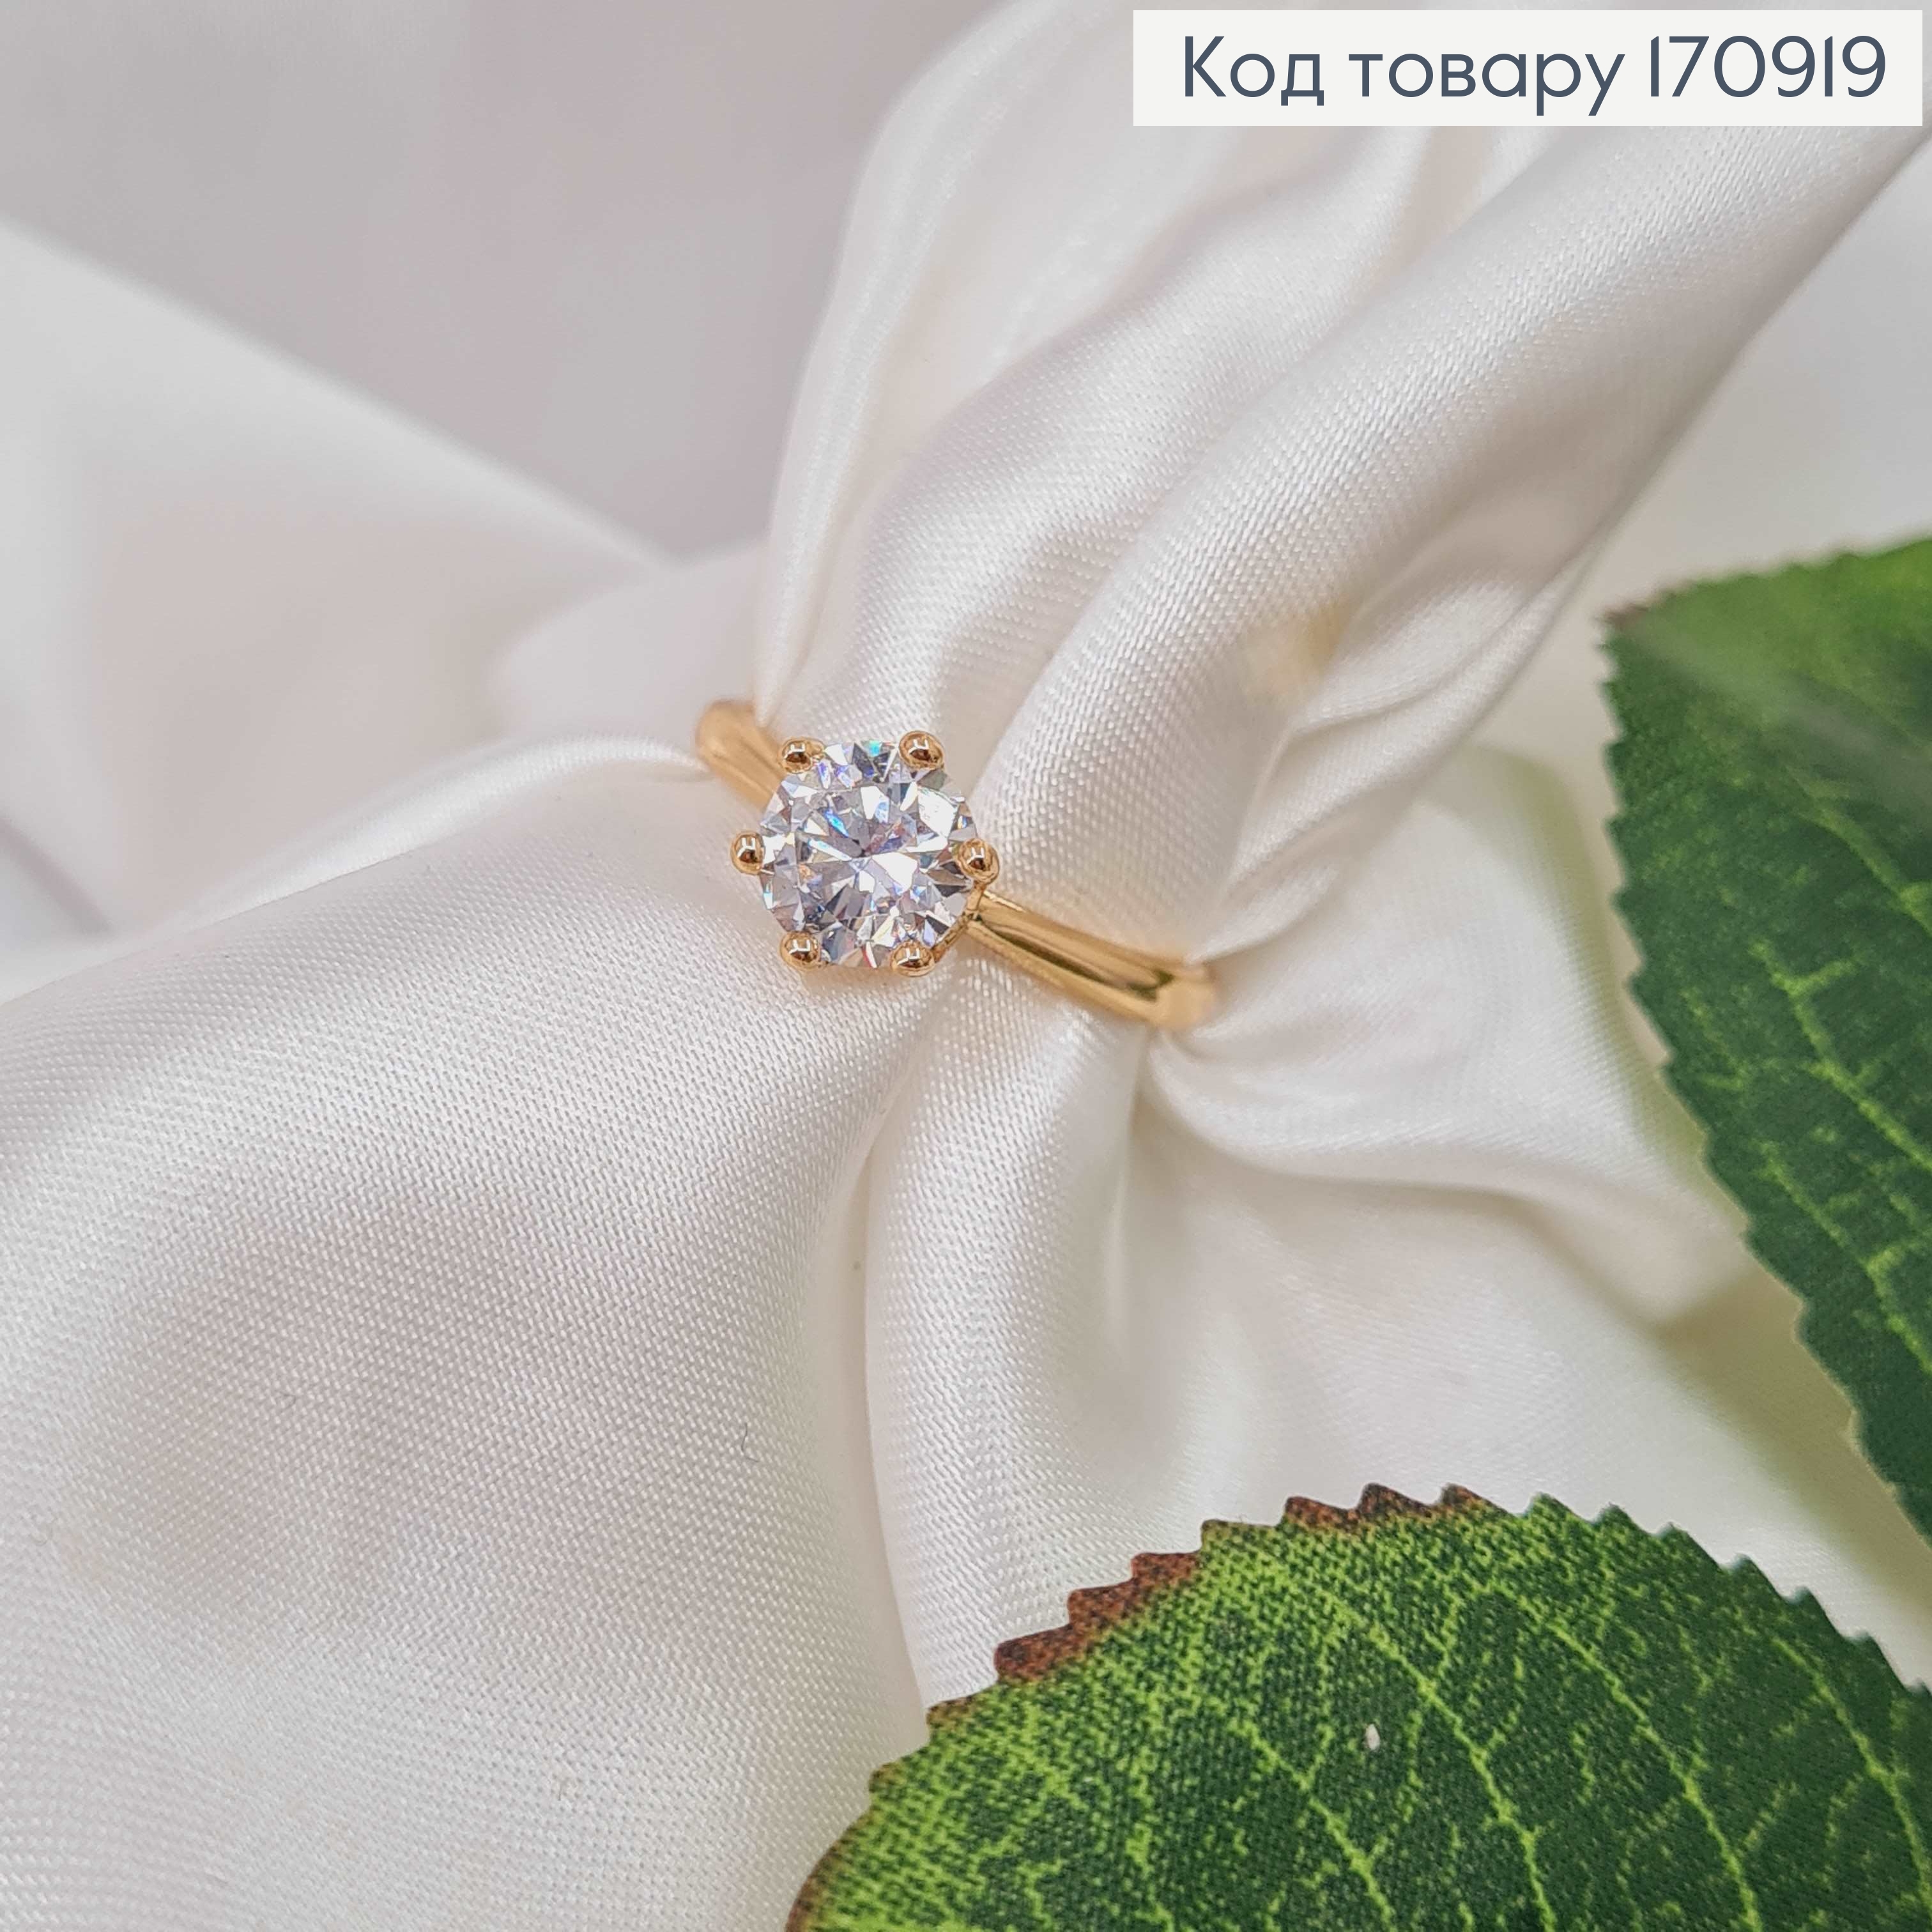 Перстень, Класичний з камінцем, Xuping 18К 170919 фото 2